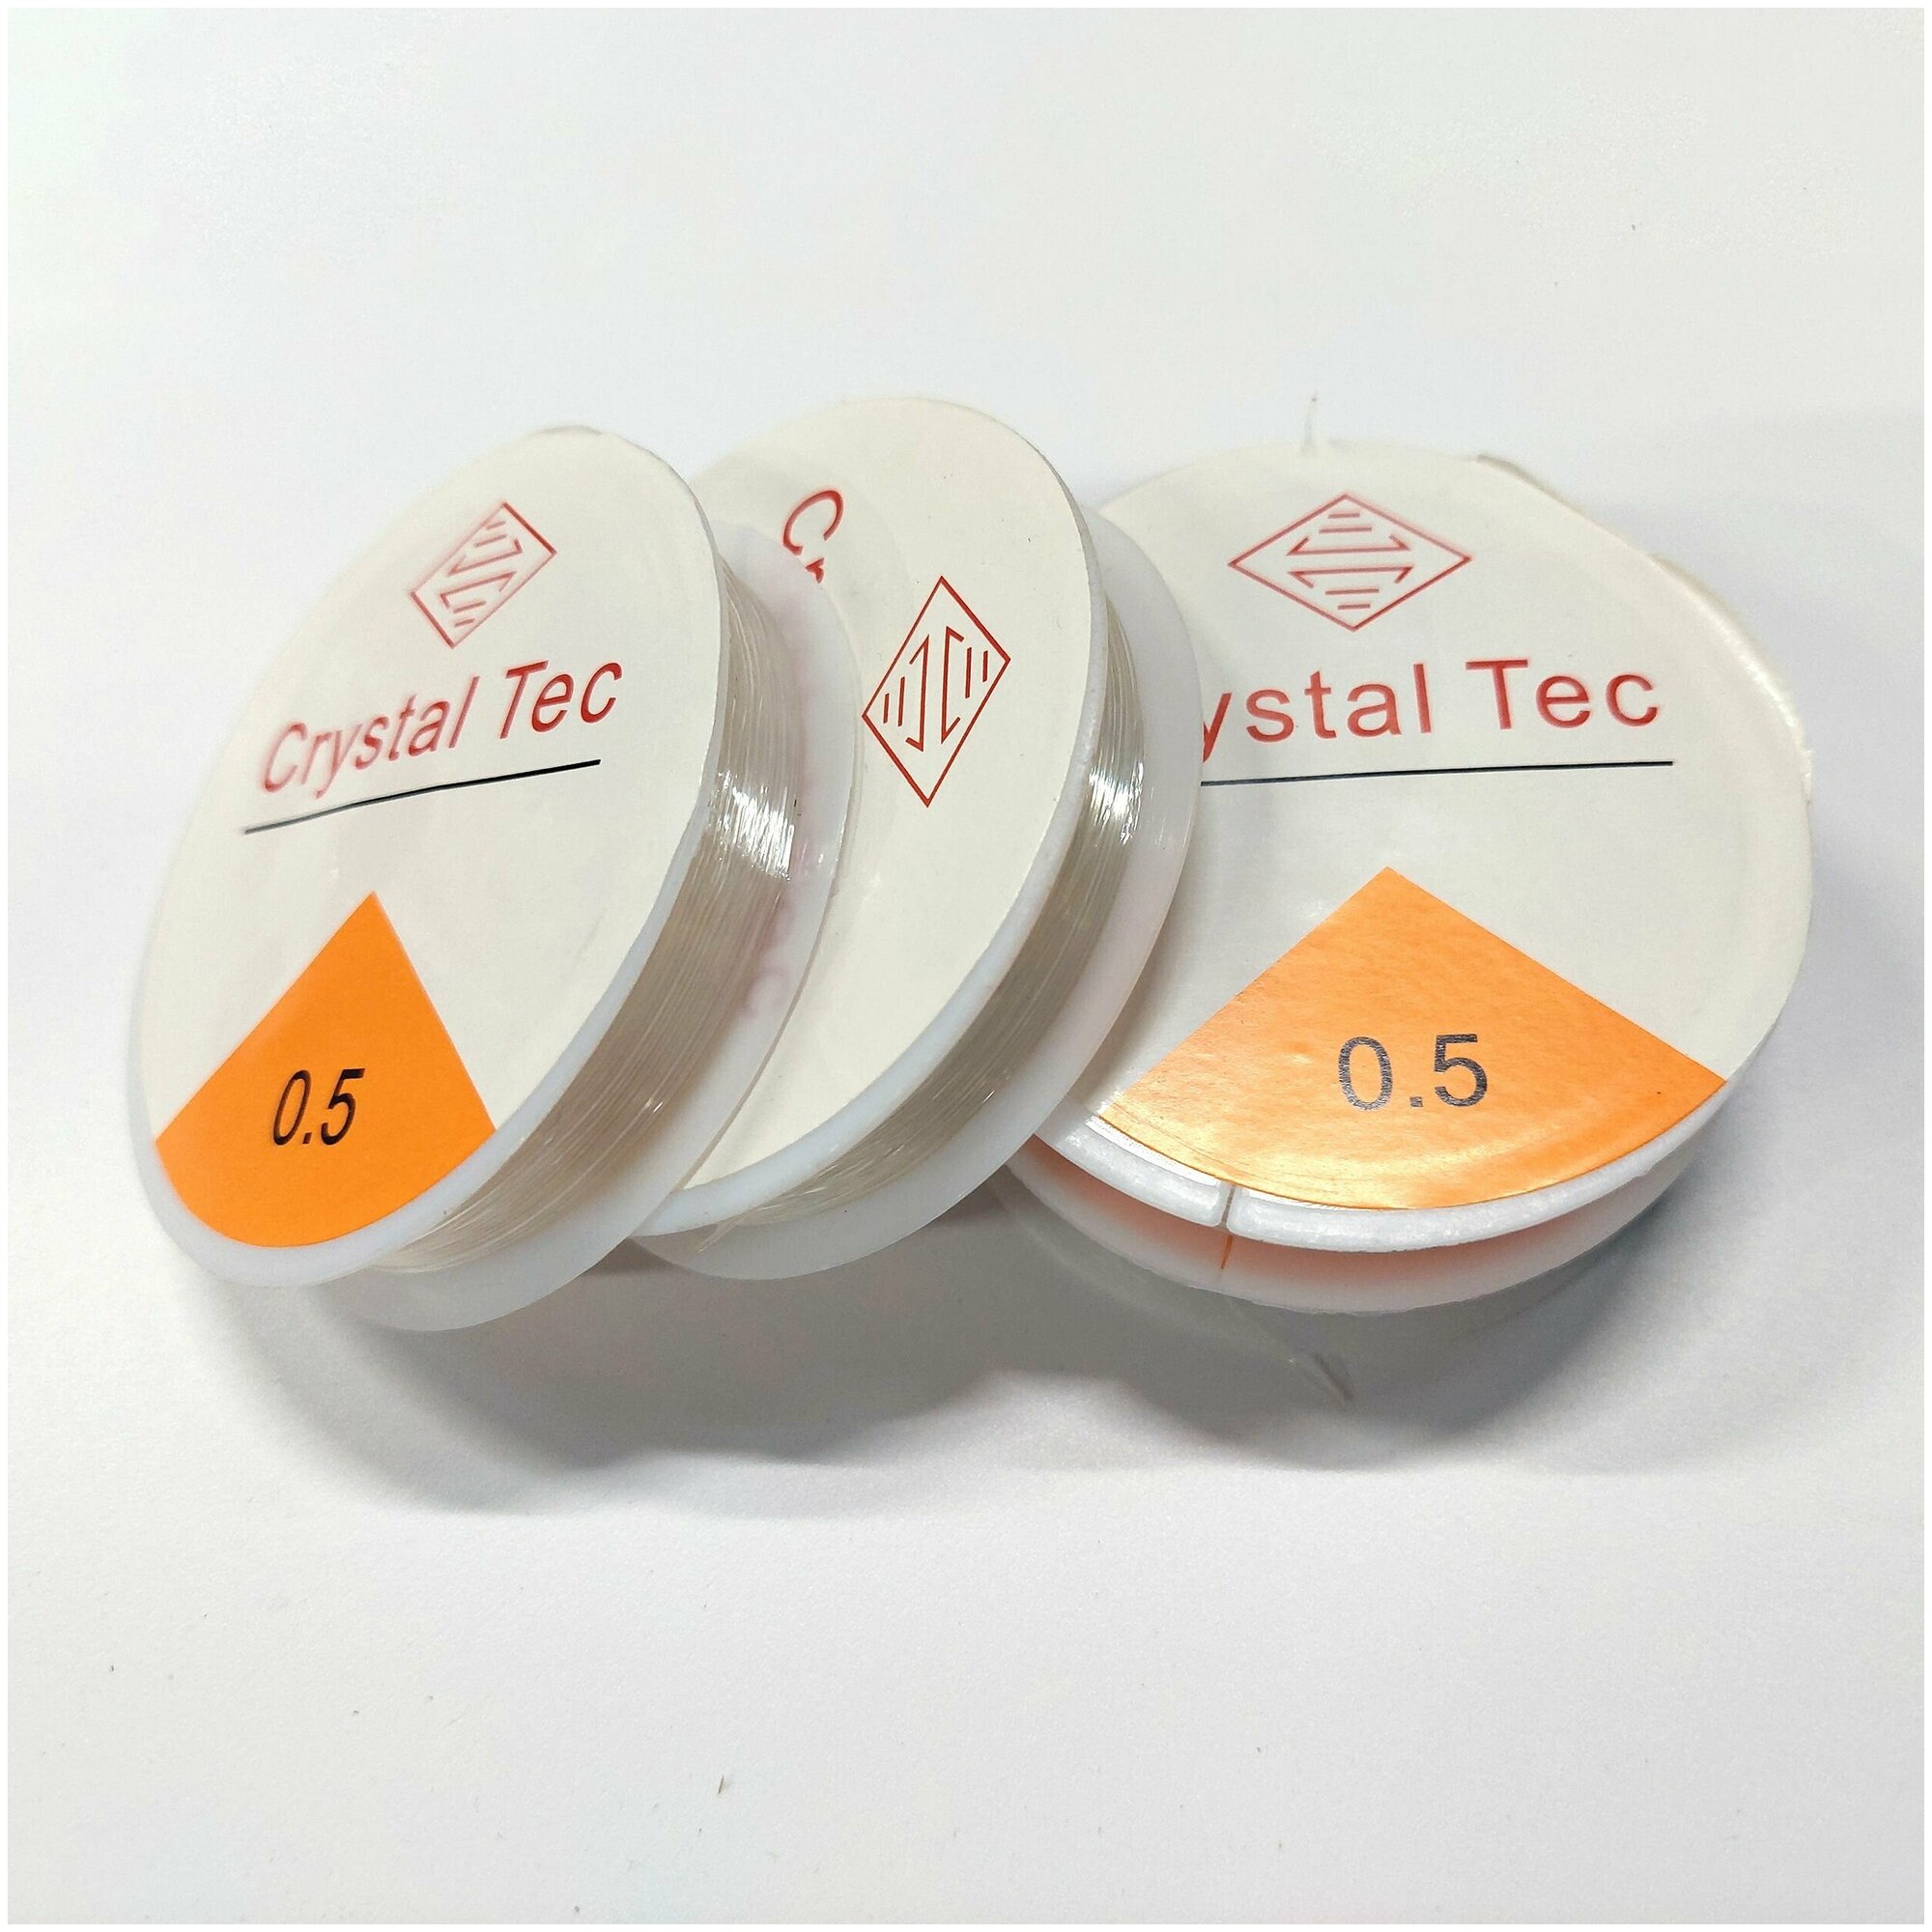 Резинка для браслетов Crystal Tec 0.5 мм прозрачная, 1 штука